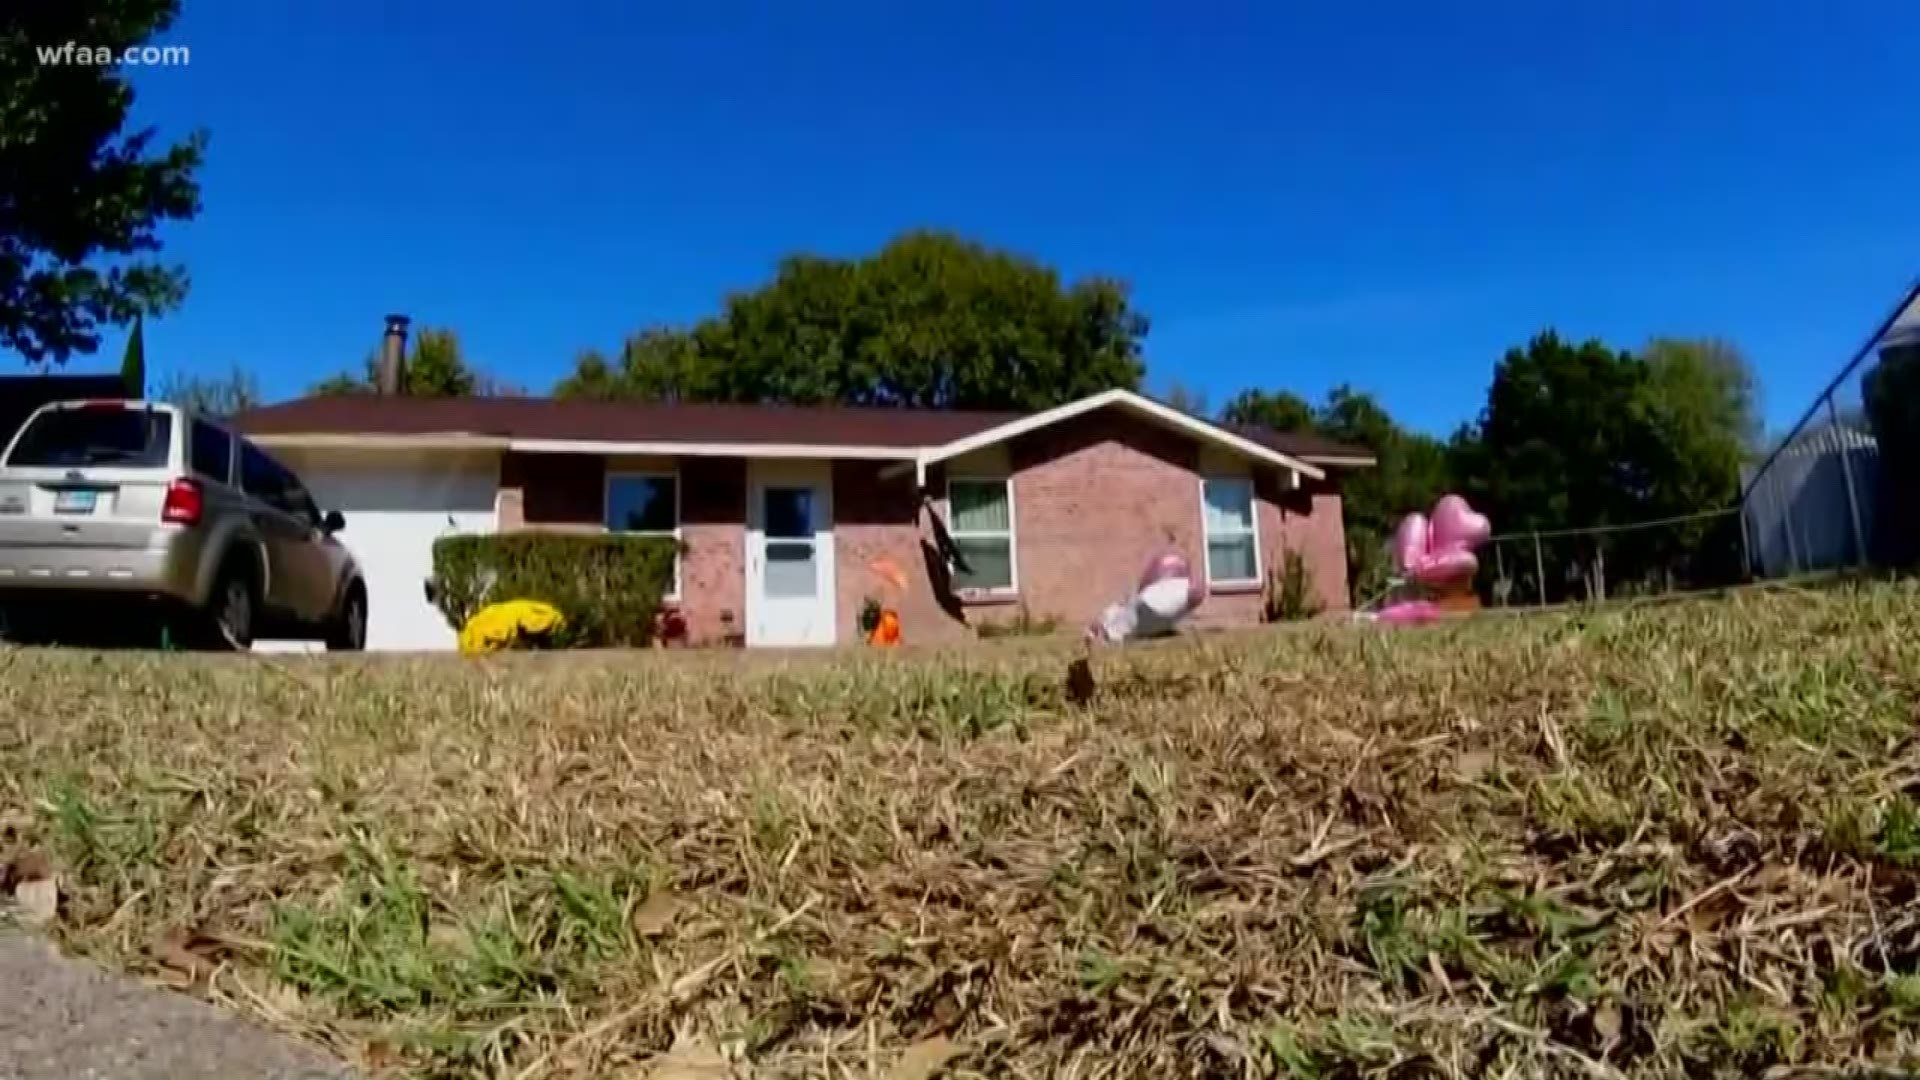 Deadly dispute between Cedar Hill neighbors